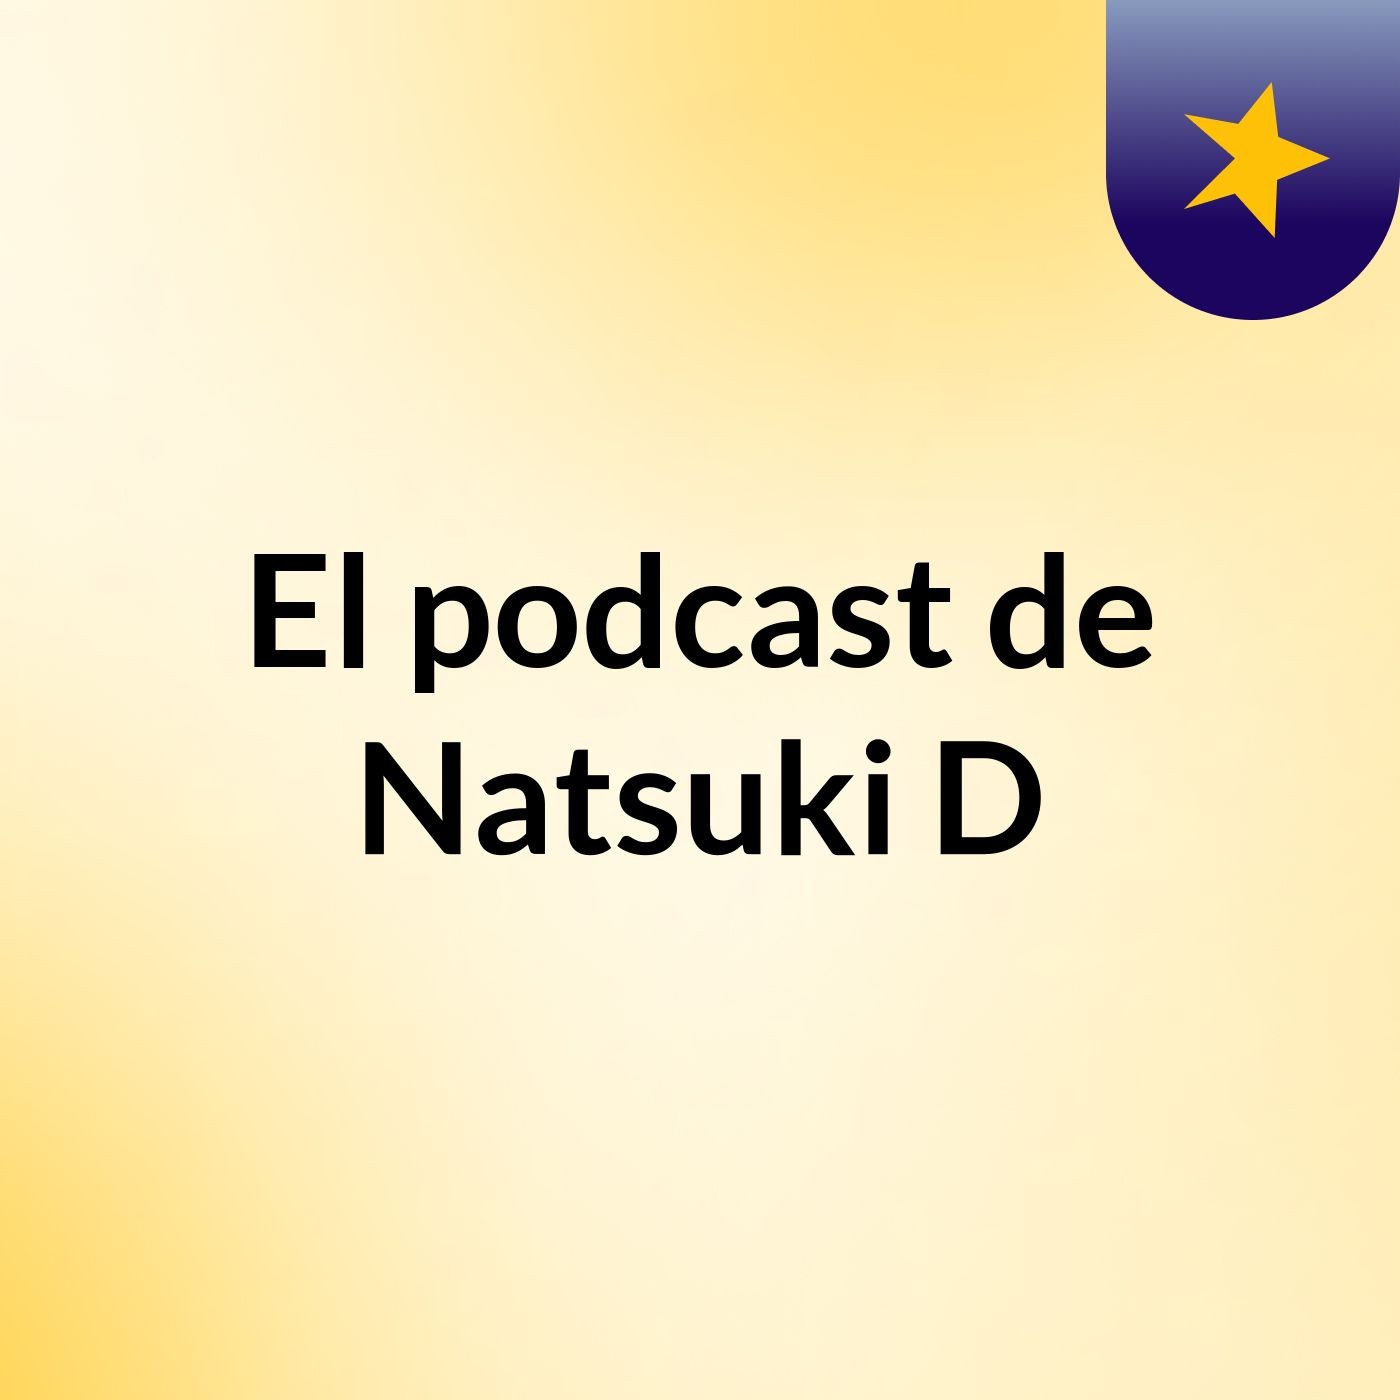 El podcast de Natsuki :D